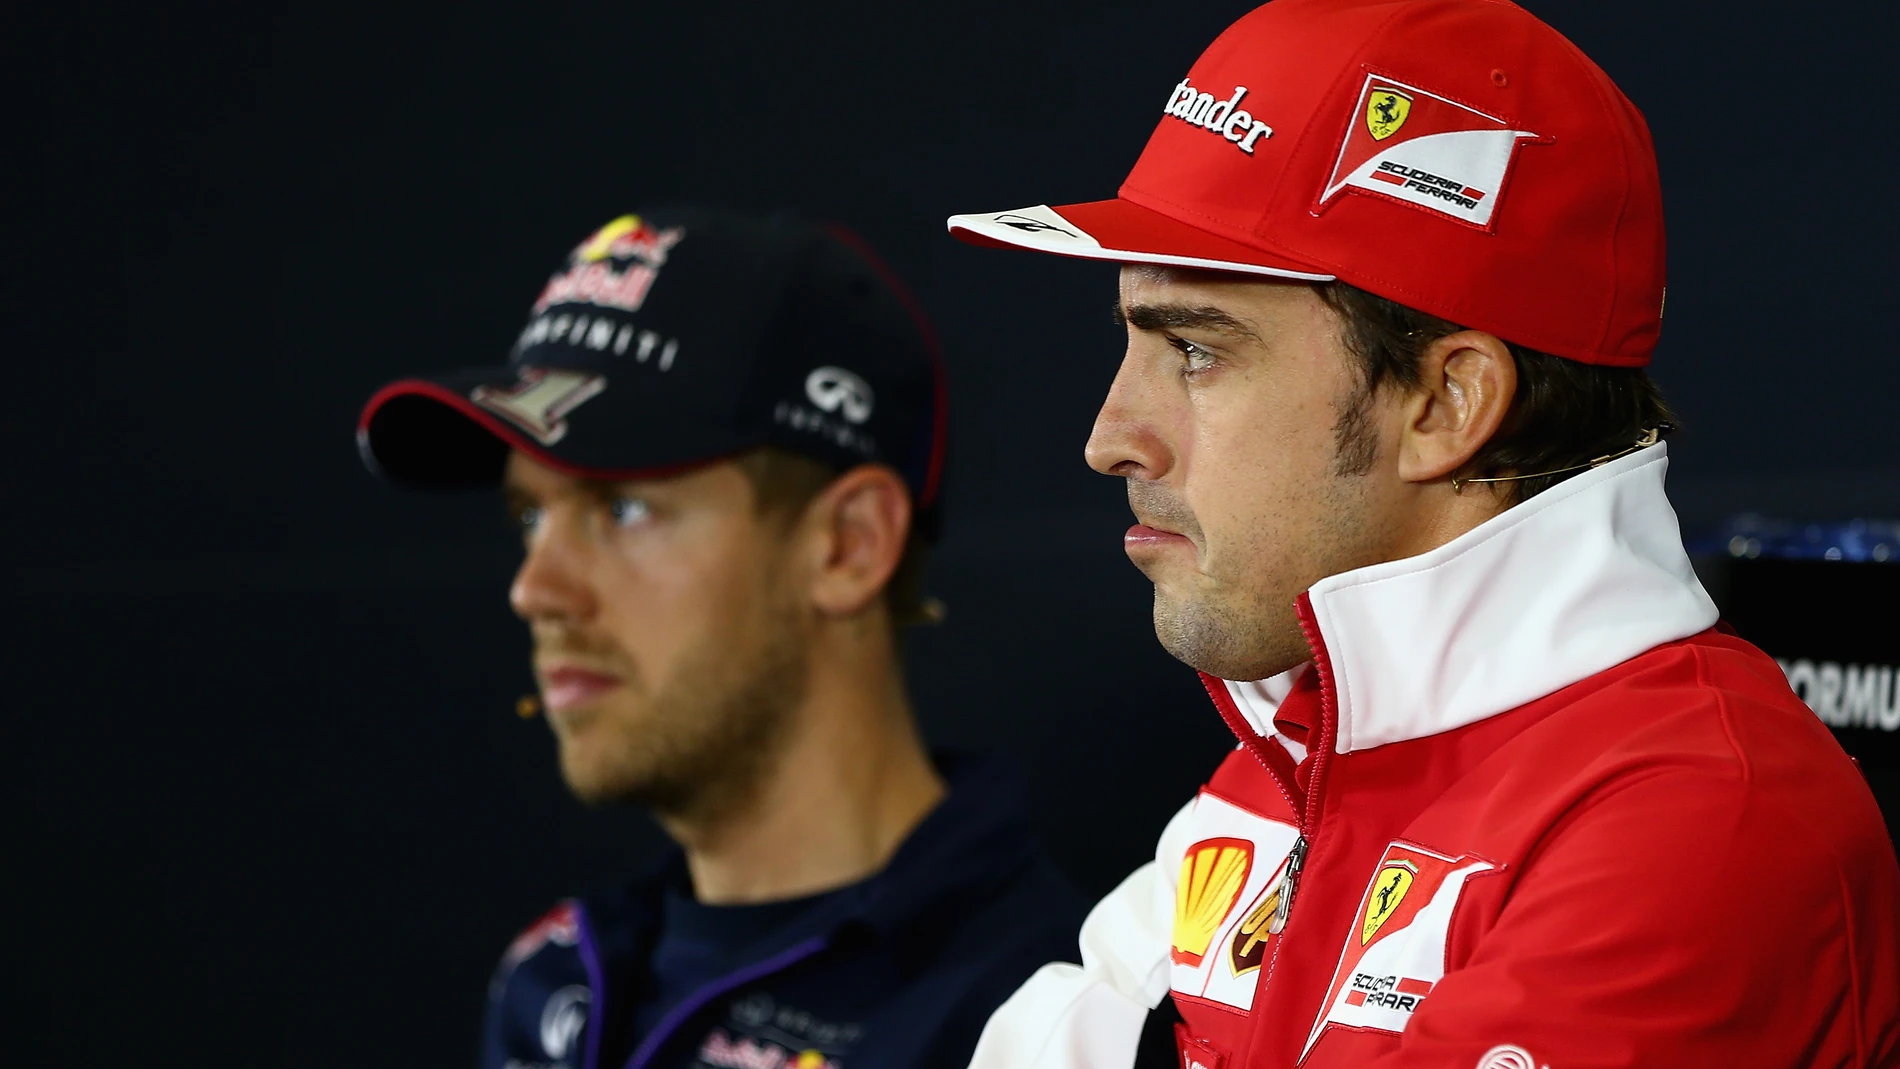 Alonso y Vettel ante los medios